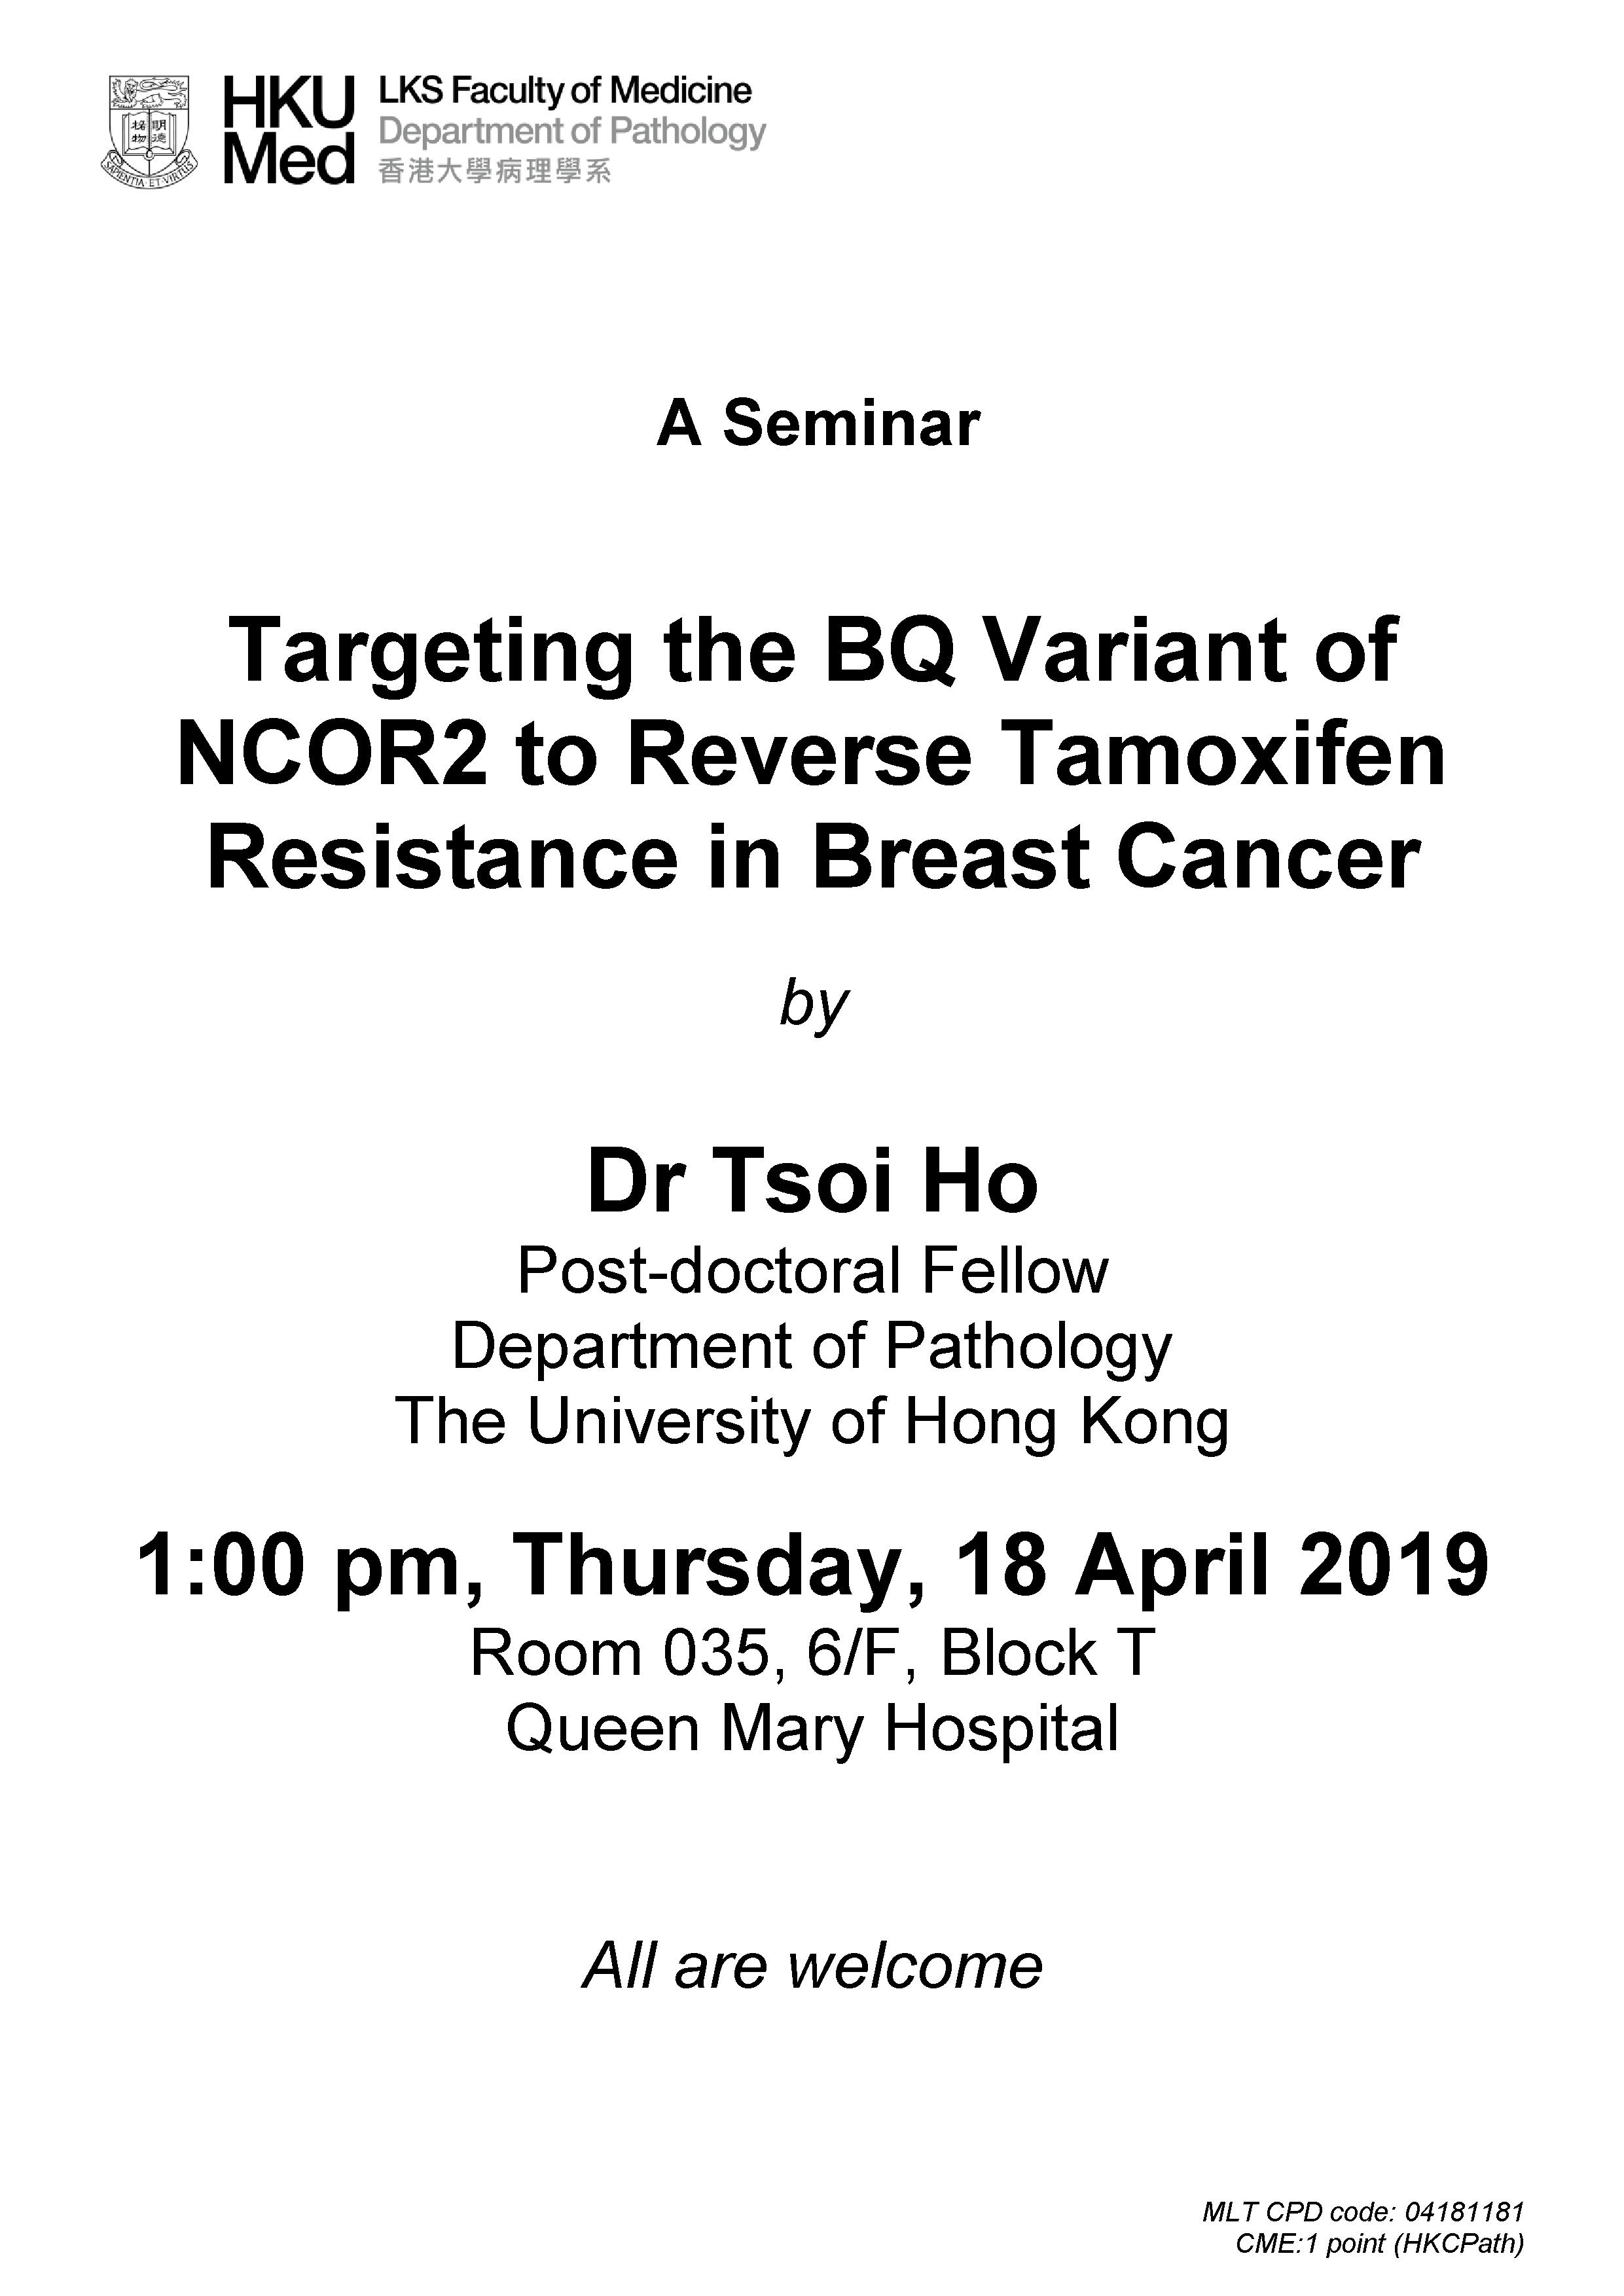 A seminar by Dr Tsoi Ho on 18 April 2019 (1pm)